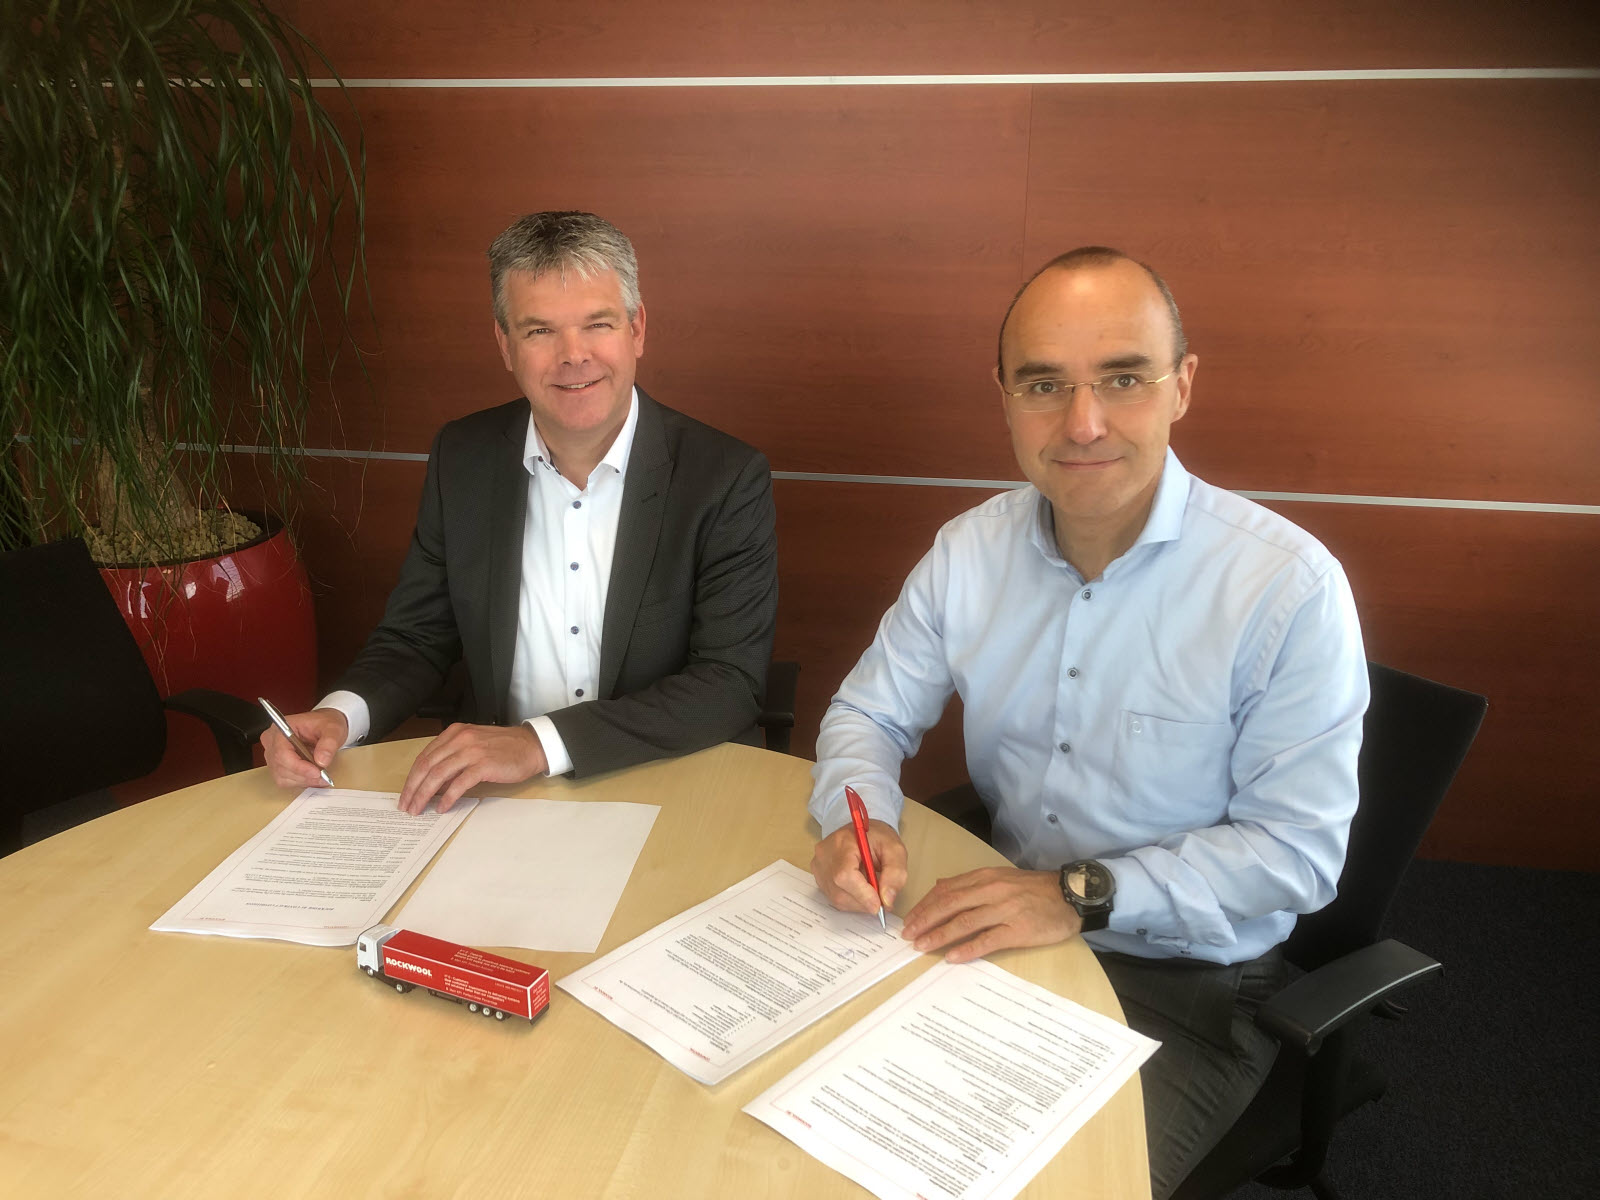 Piet Herder van Ammeraal Beltech en Jos Dumoulin van ROCKWOOL ondertekenen de samenwerkingsovereenkomst